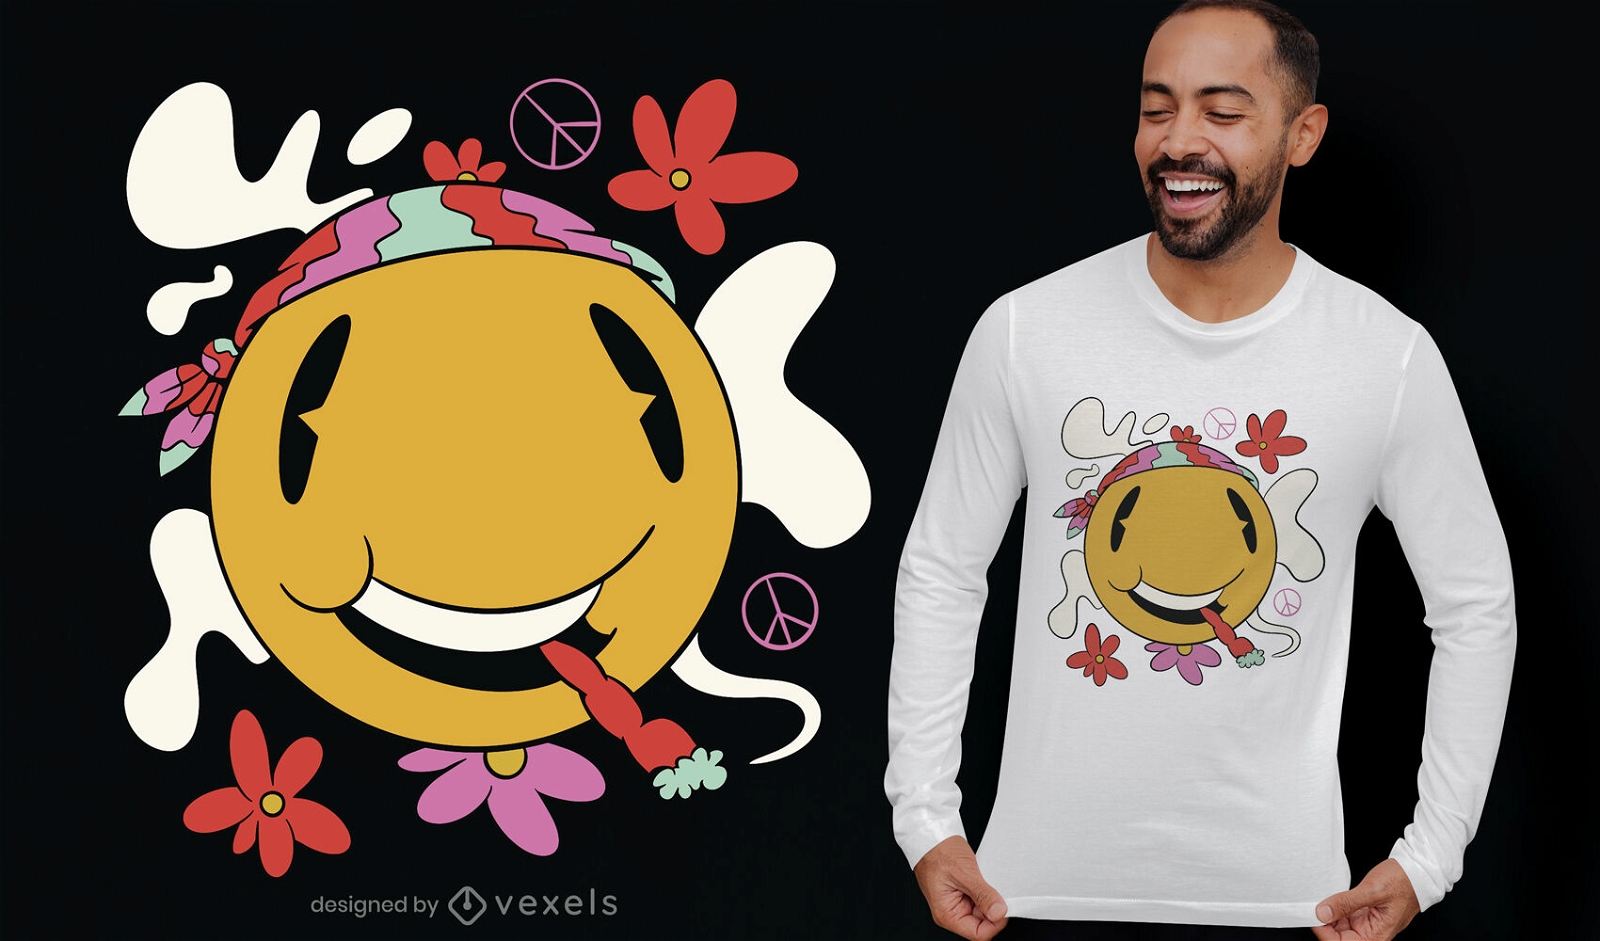 Hippie-l?chelndes Emoji-Rauchen-T-Shirt-Design